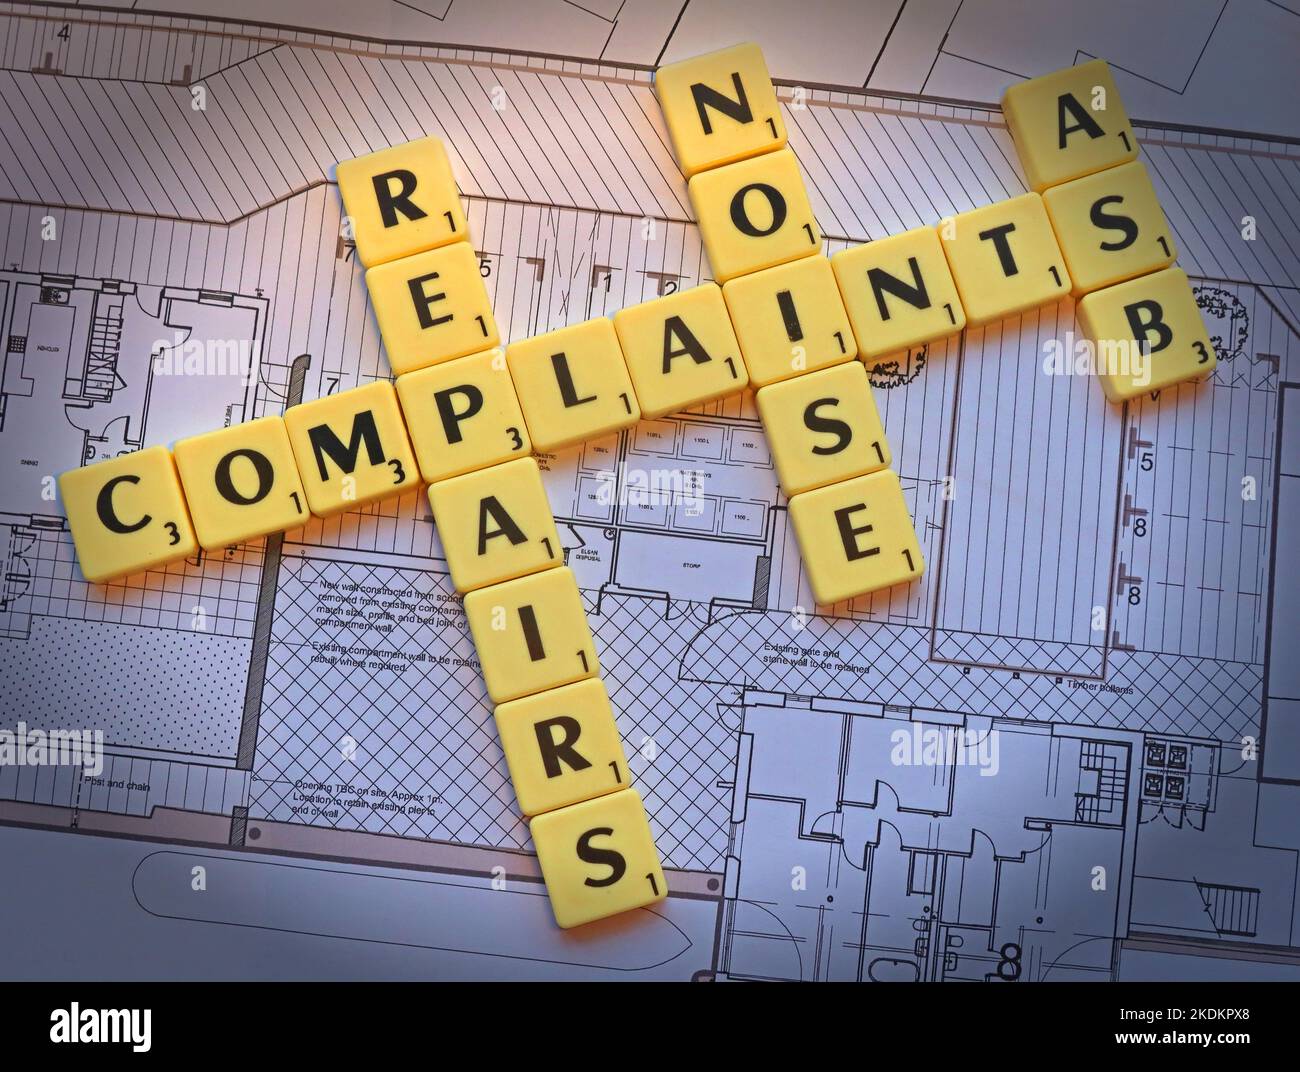 Tous les types de plaintes - réparations, ASB, bruit - lettres crabble sur les plans d'un régime de logement - questions de propriété Banque D'Images